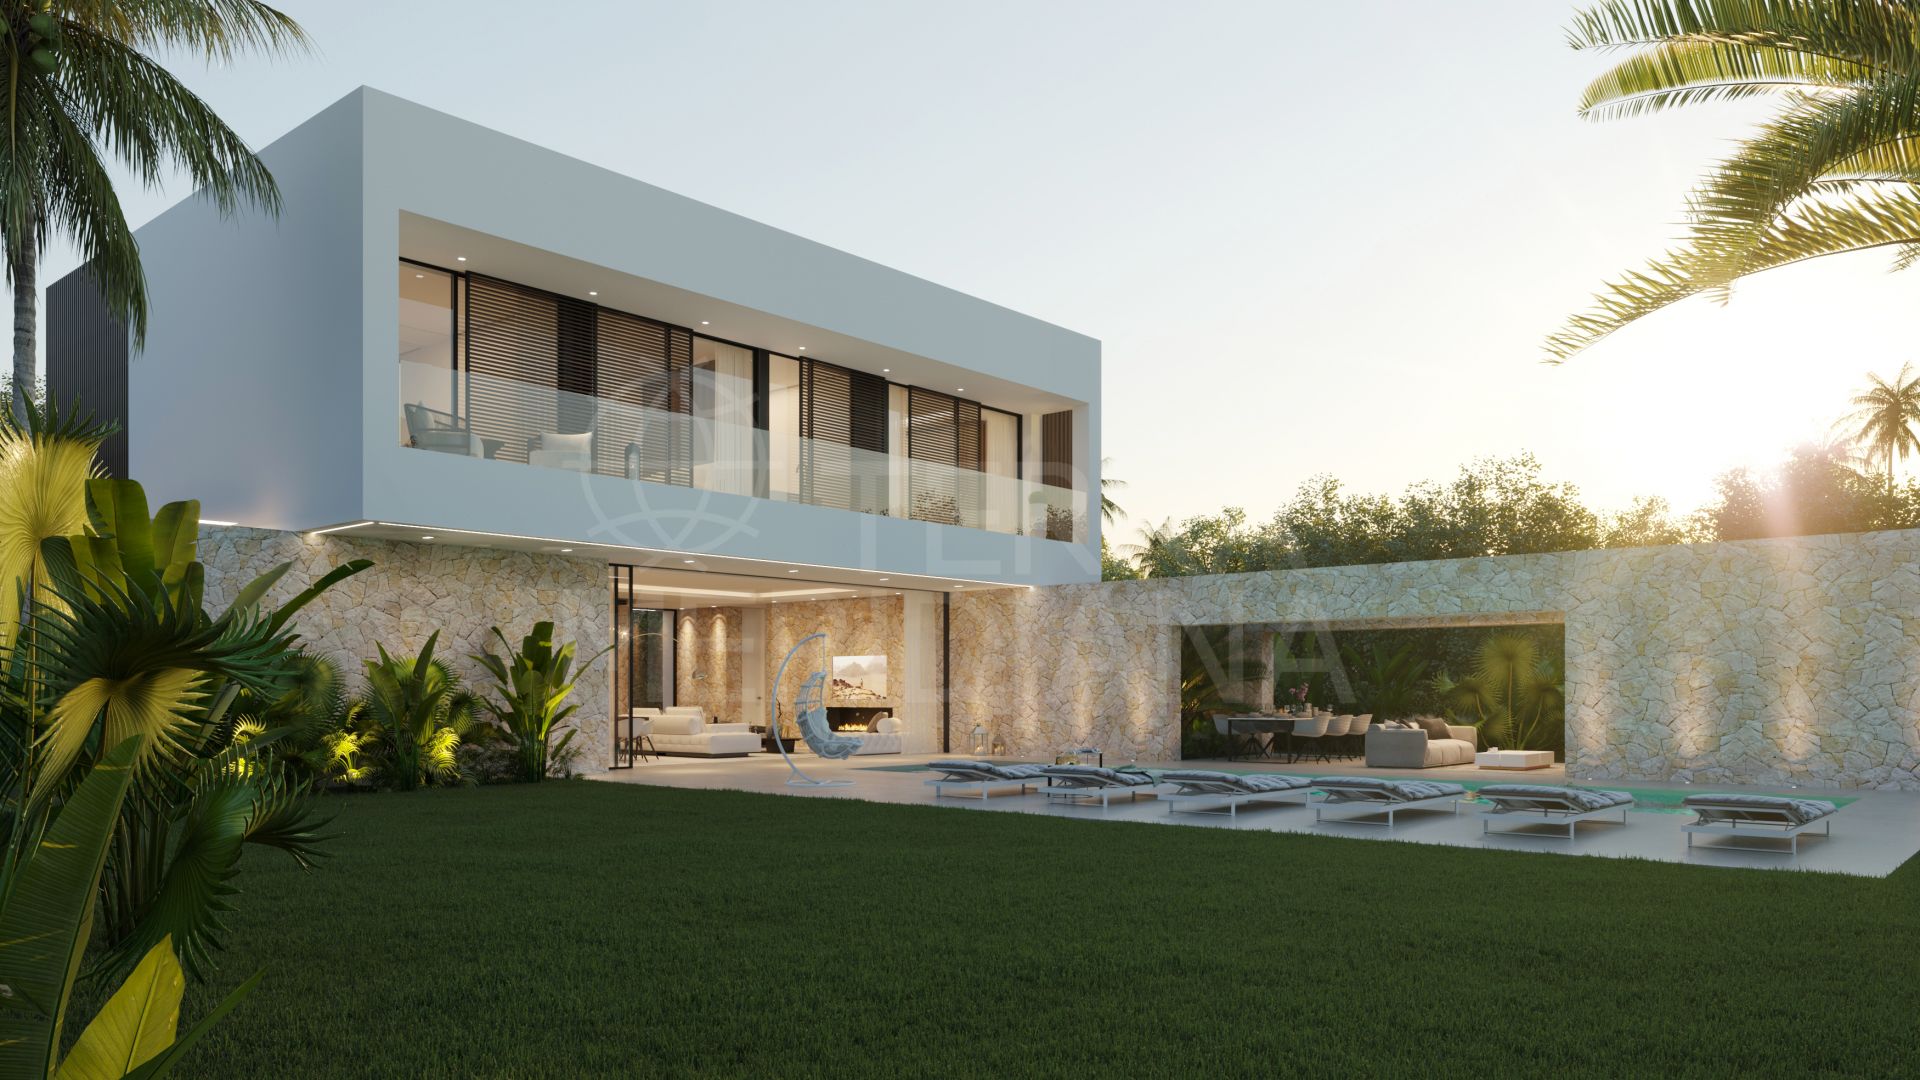 Villa contemporánea de nueva construcción, con 5 dormitorios, piscina y jardín, cerca de la playa, en venta en Marbella